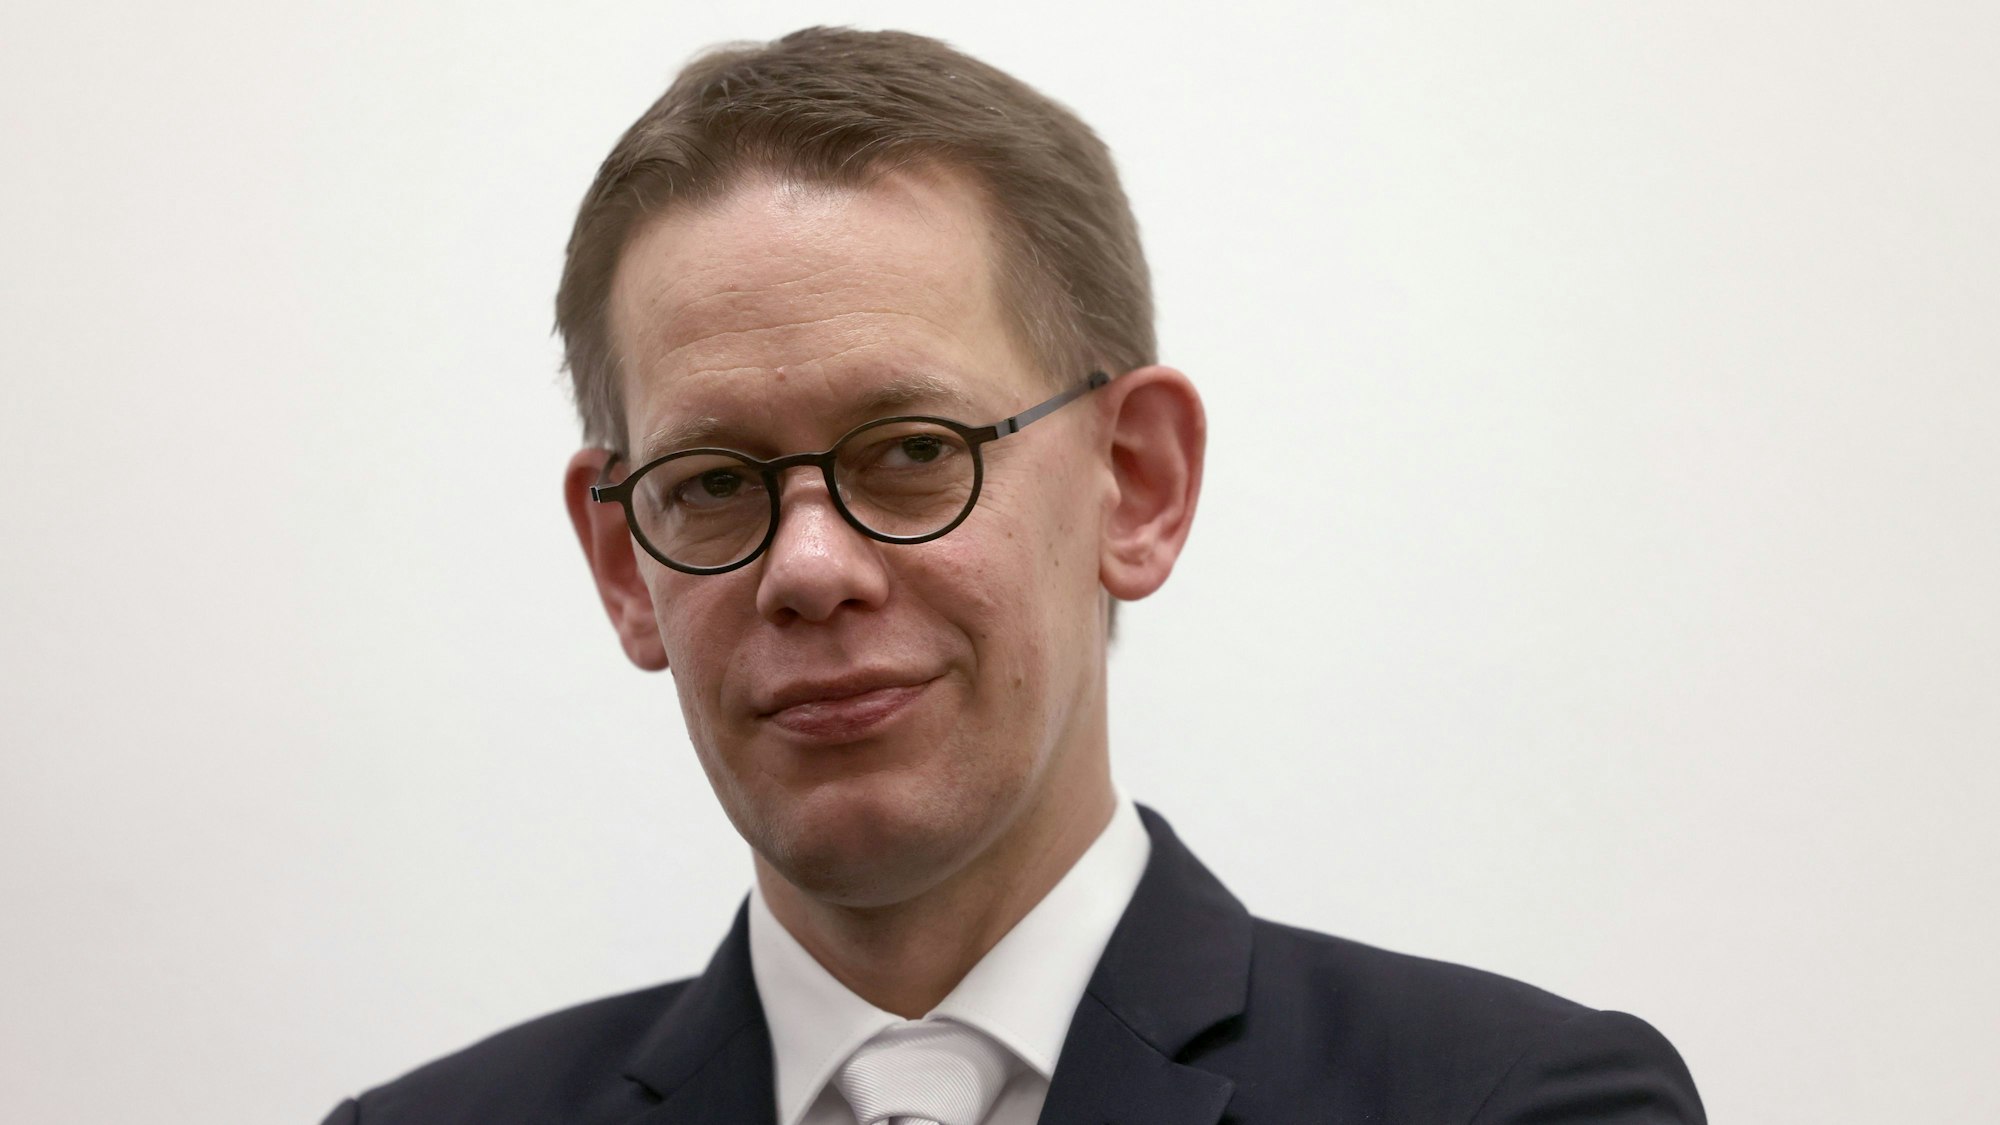 Rechtsanwalt Wolfgang Heer verteidigt den mutmaßlichen Komplizen von Thomas Drach.